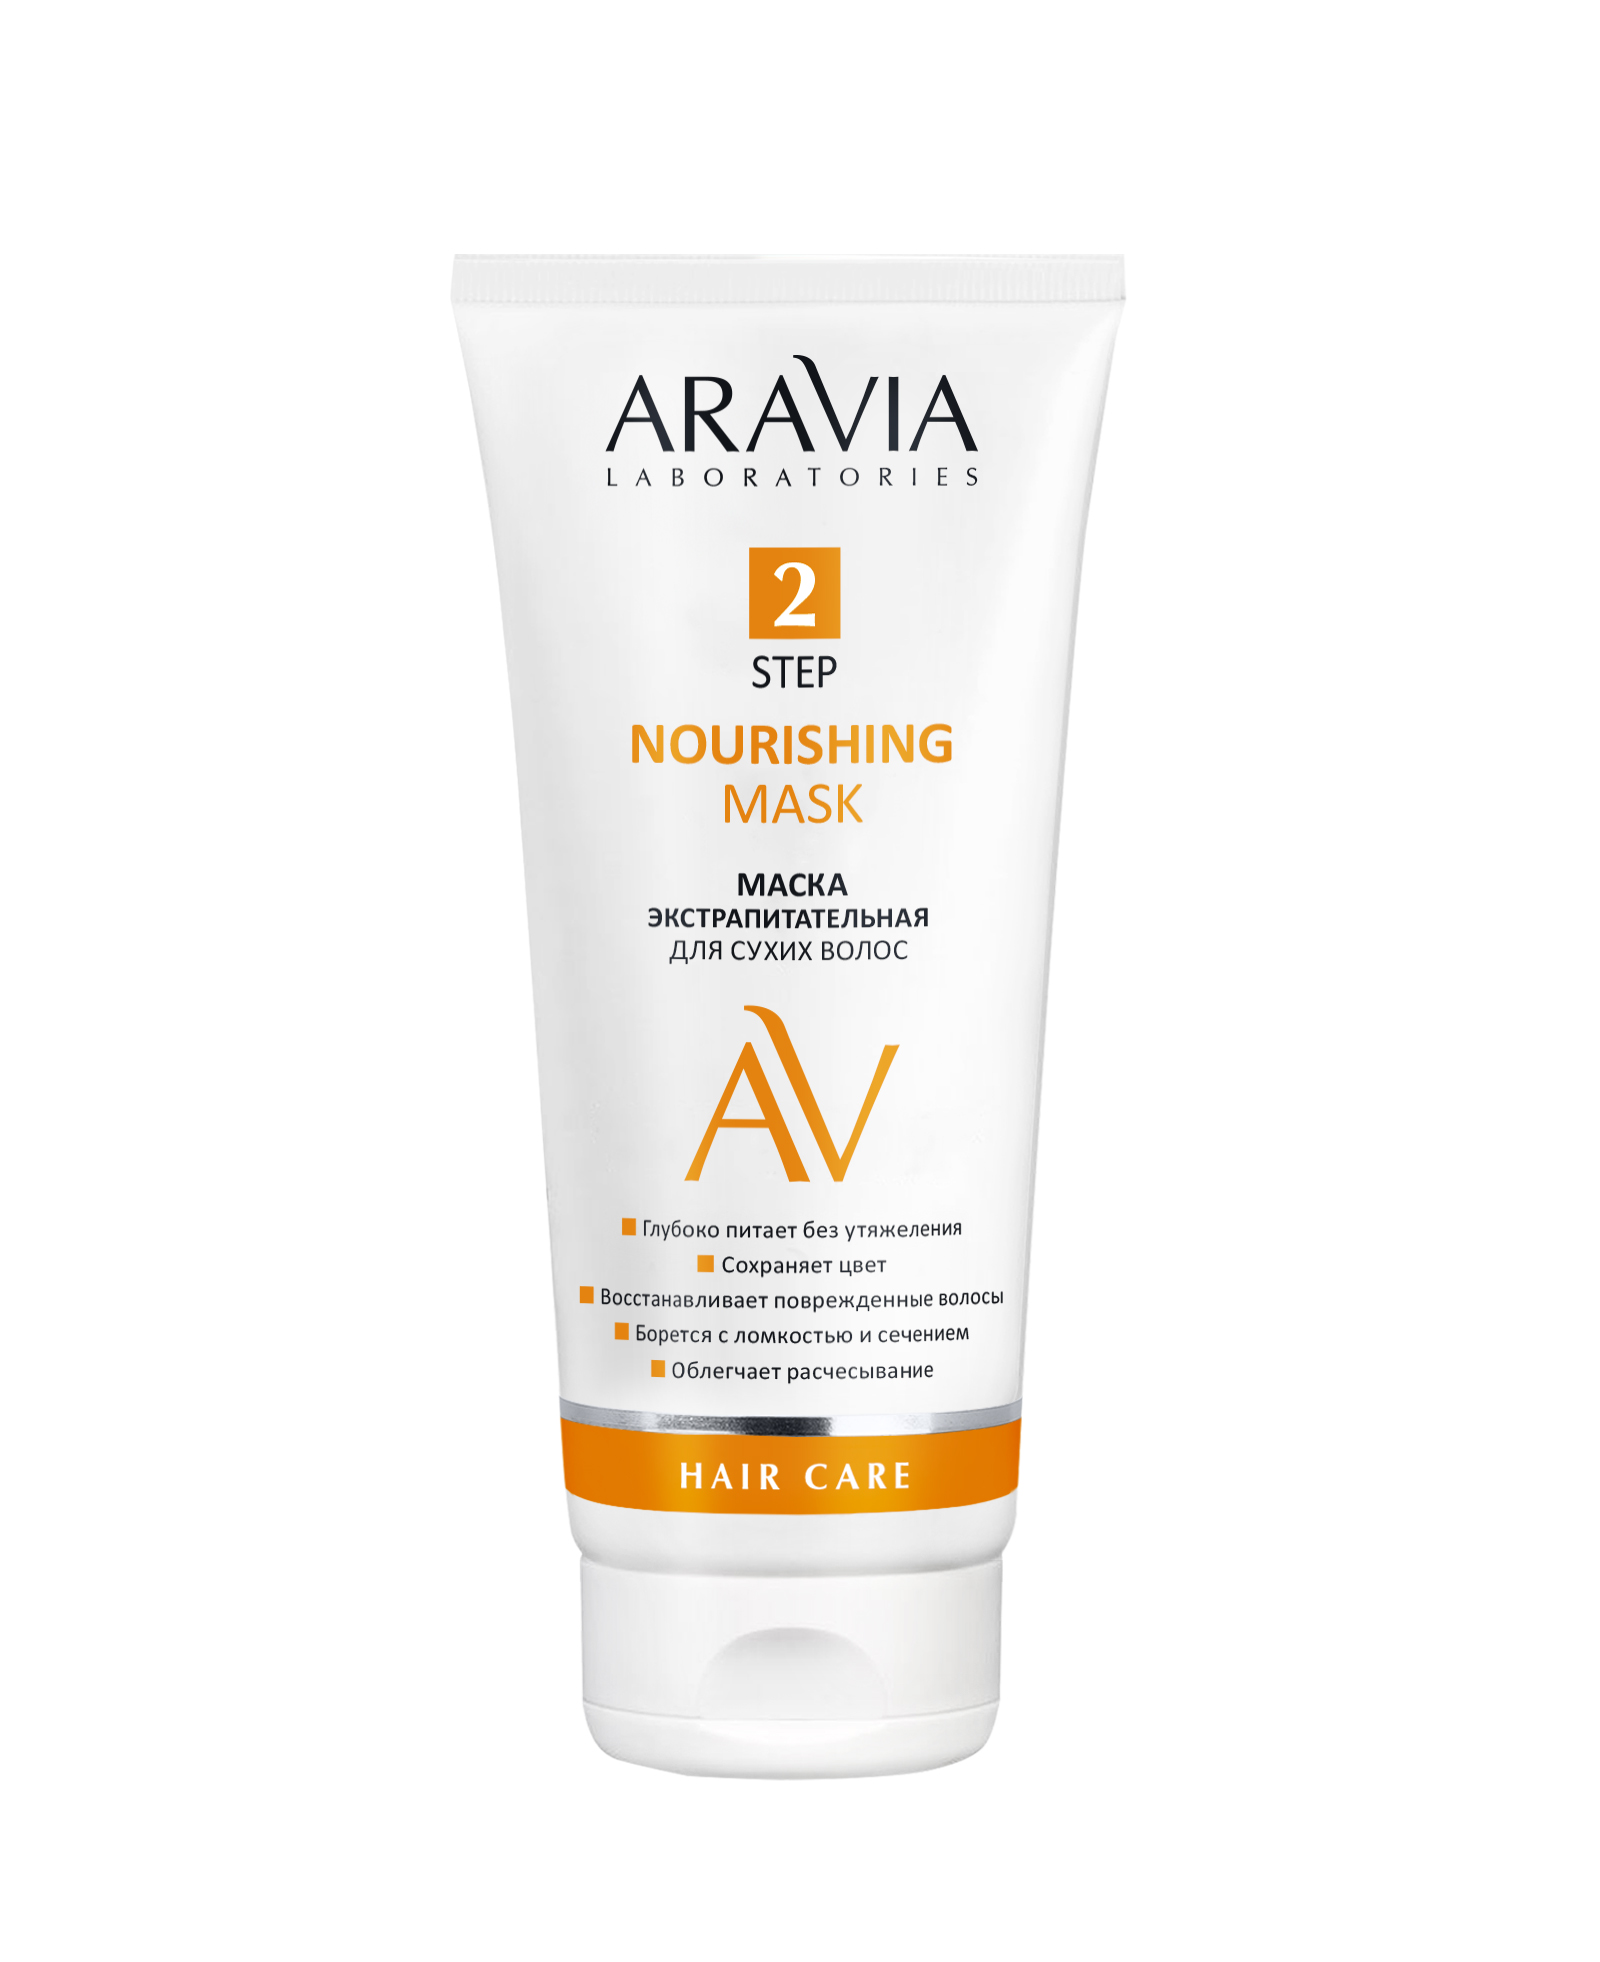 ARAVIA Laboratories Маска экстрапитательная для сухих волос Nourishing Mask, 200мл